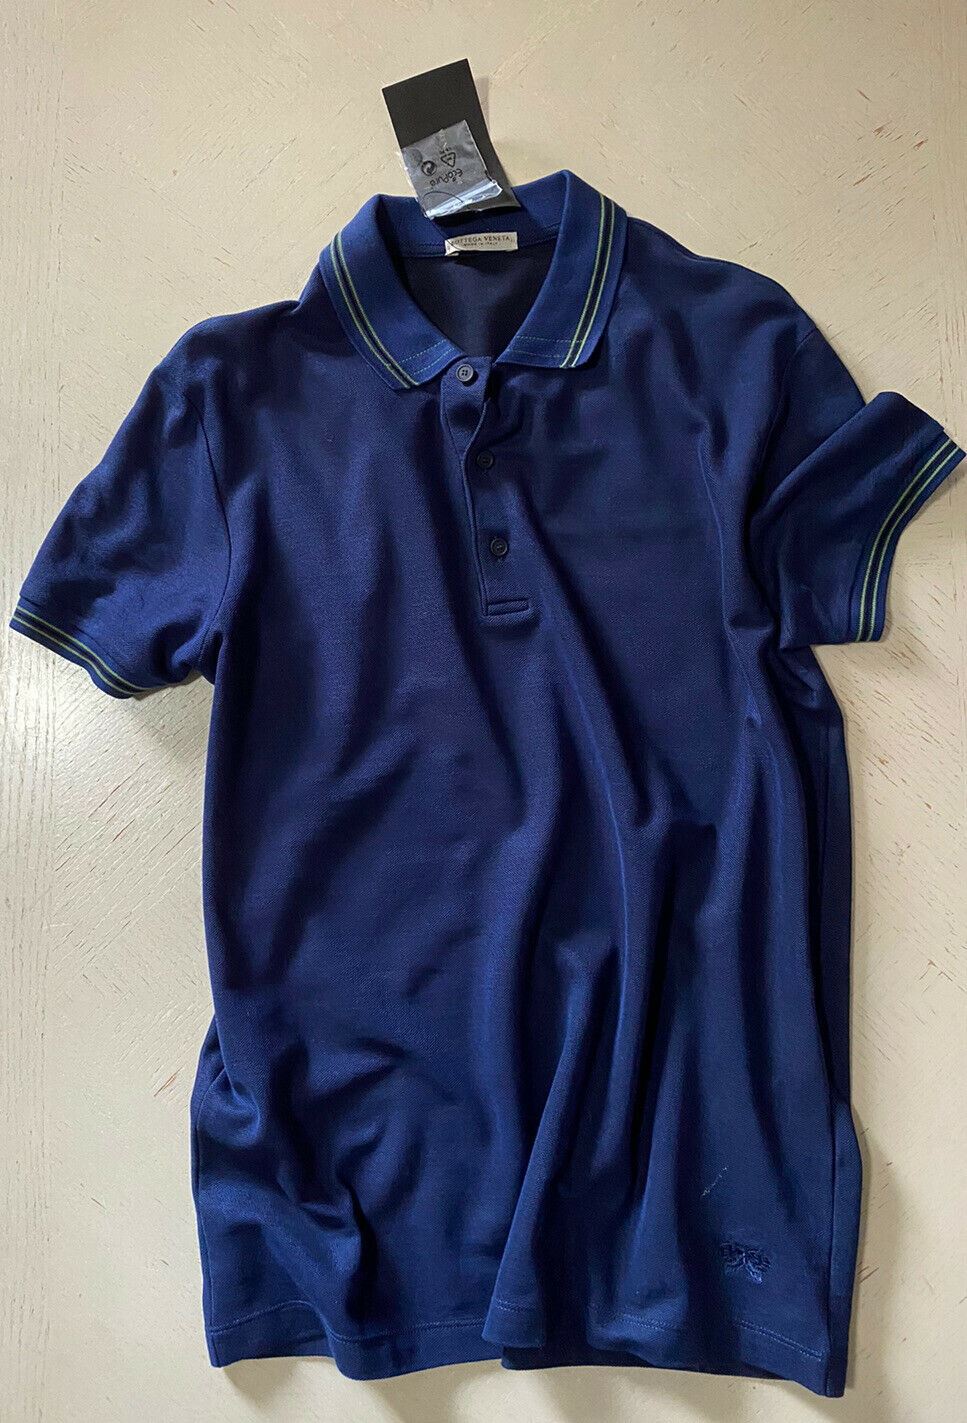 Мужская рубашка-поло Bottega Veneta, синяя, размер S, 390 долларов, США (46 евро), Италия